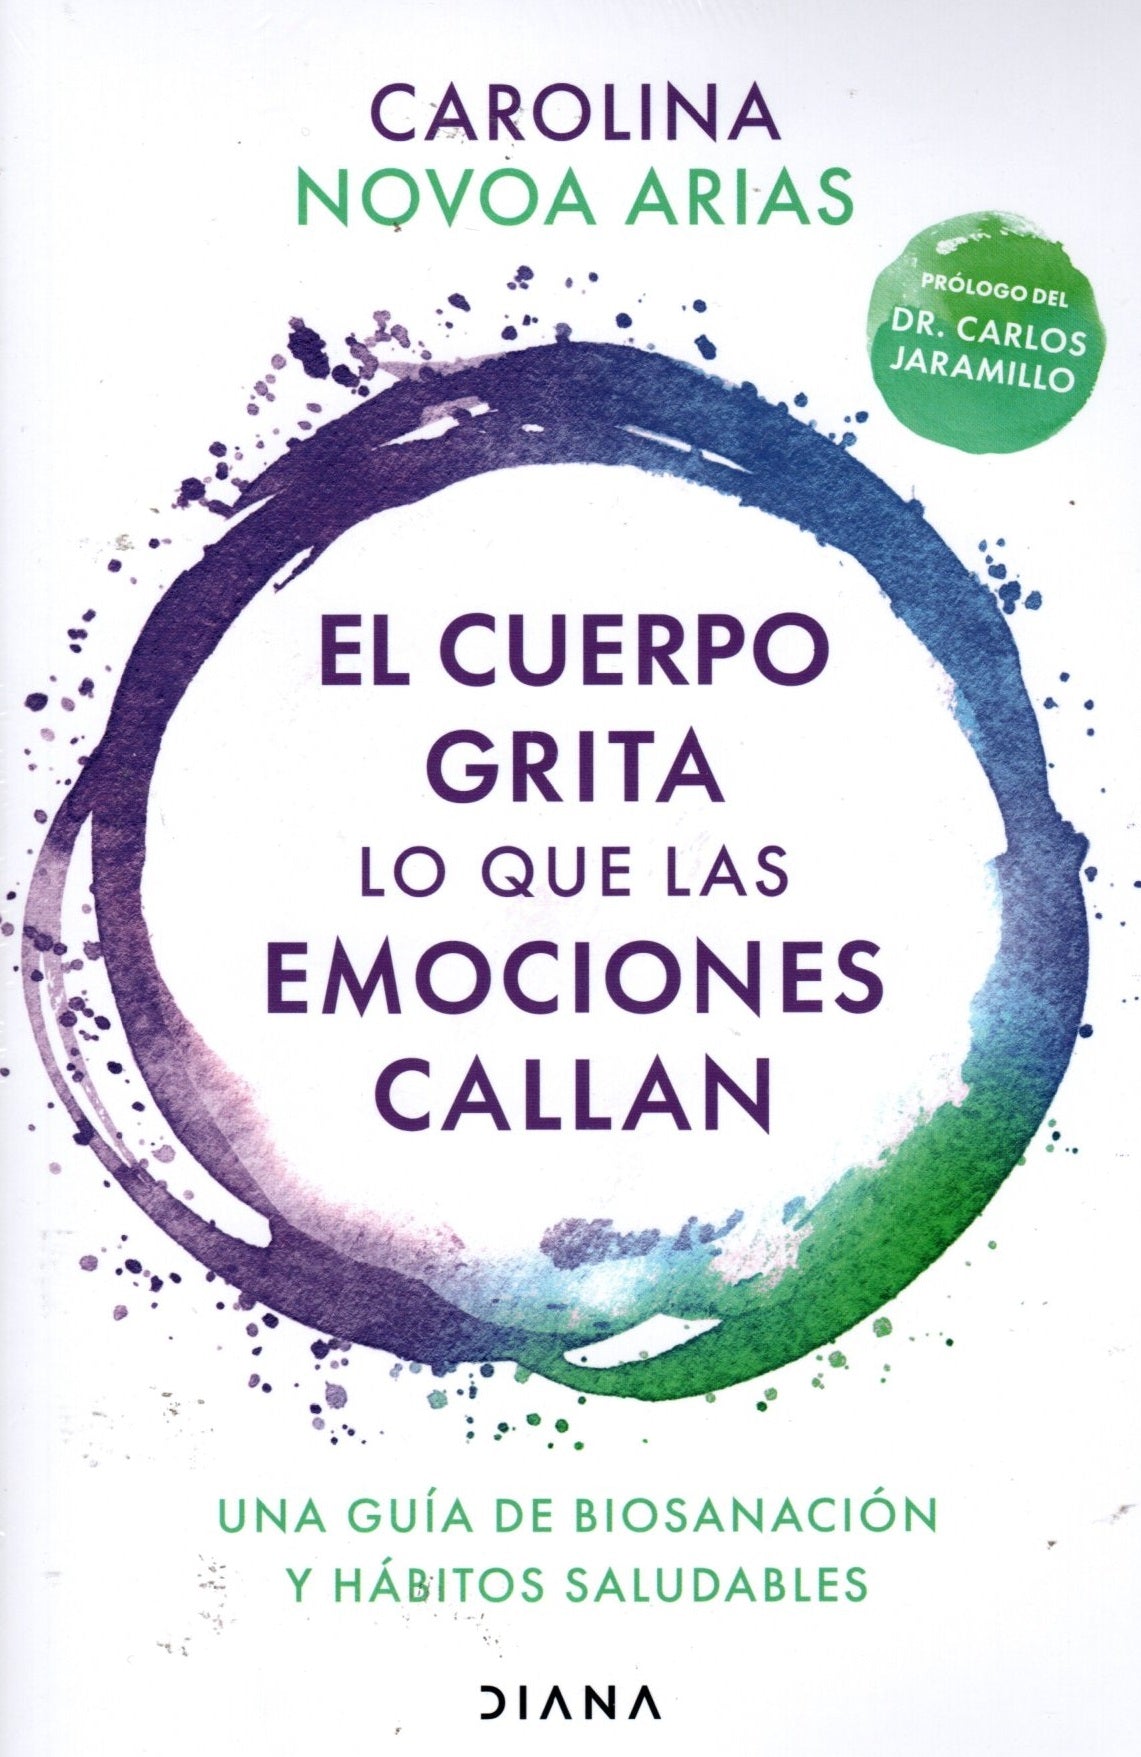 Libro Carolina Novoa Arias - El cuerpo grita lo que las emociones callan